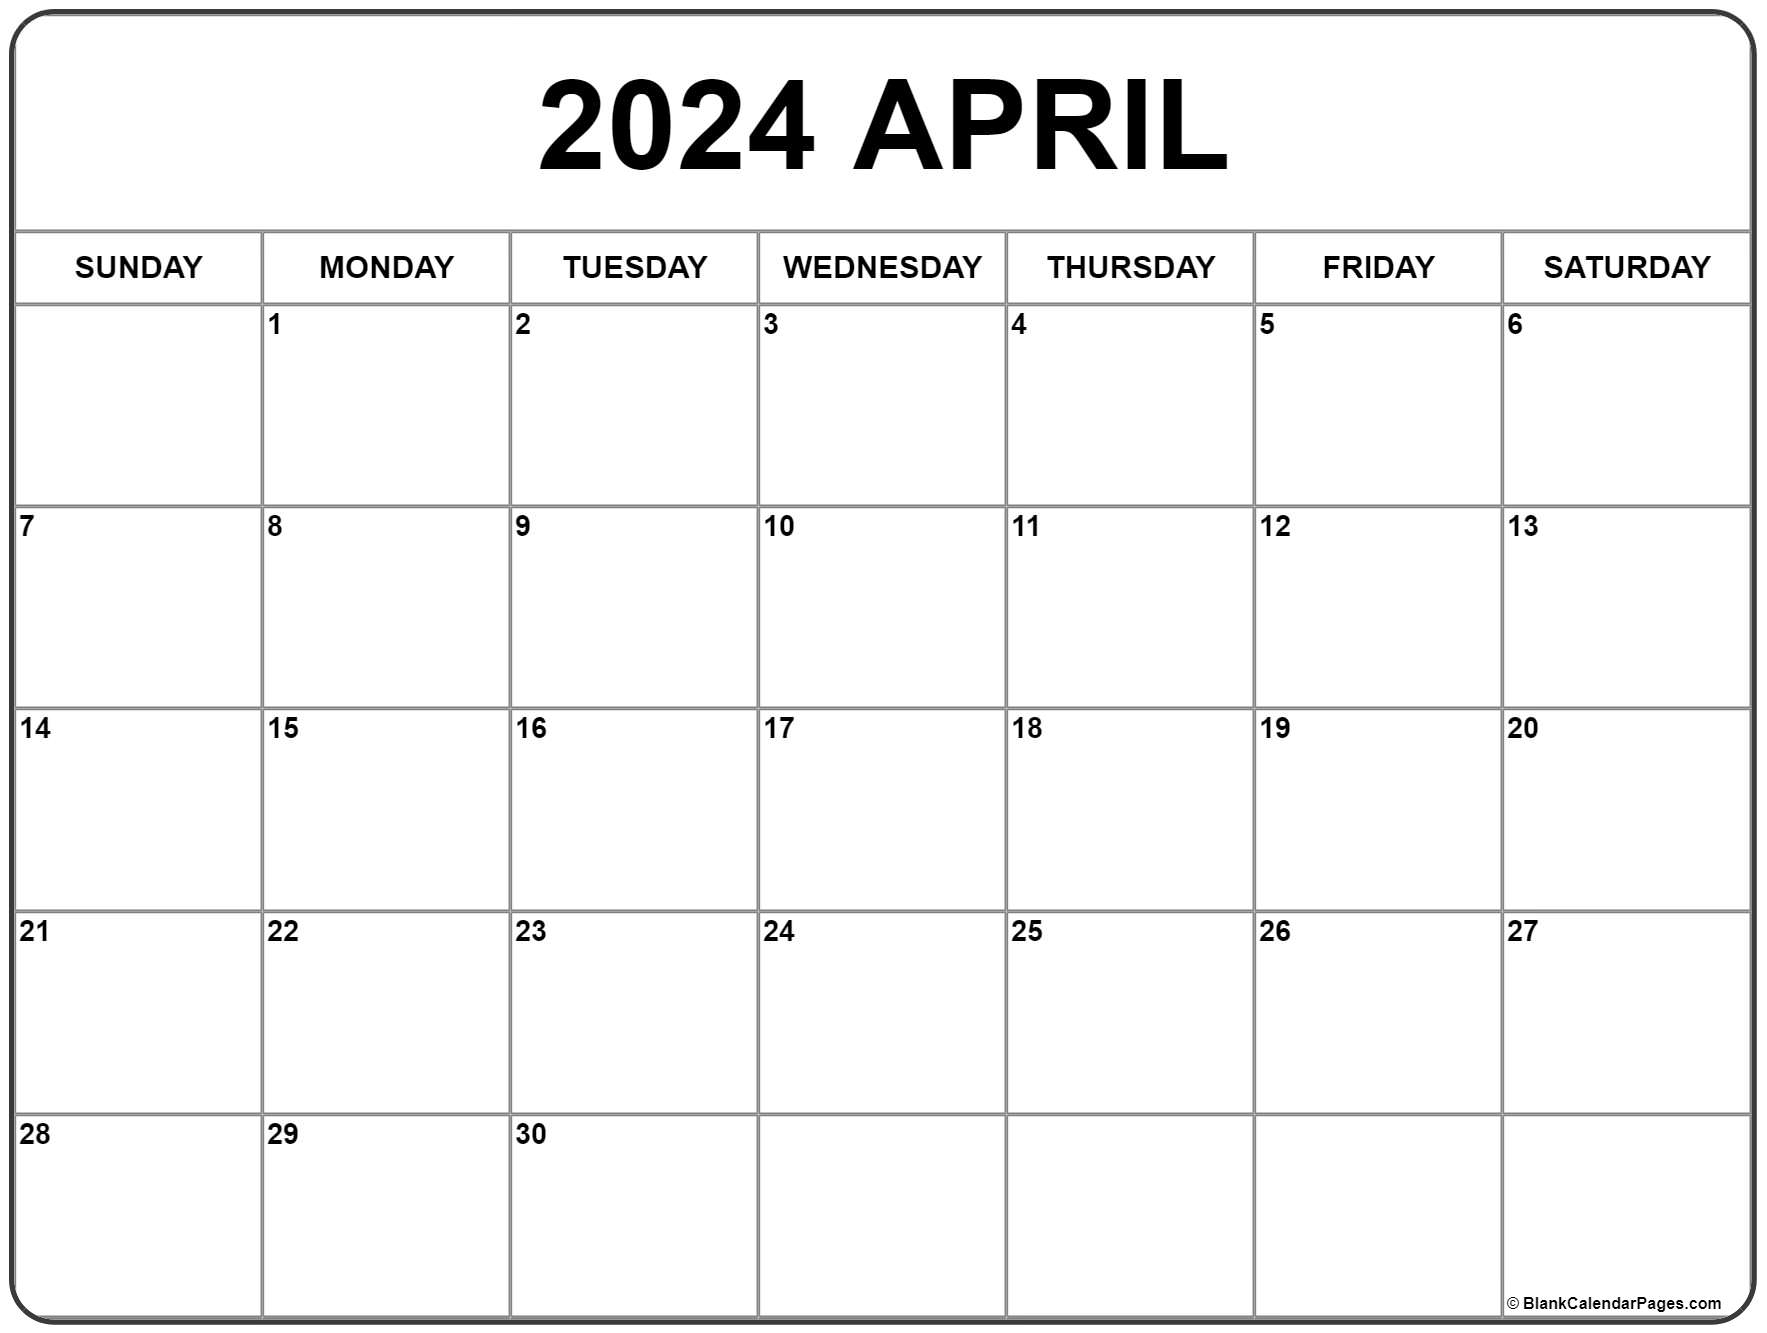 April 2024 Calendar | Free Printable Calendar for April Free Printable Calendar 2024